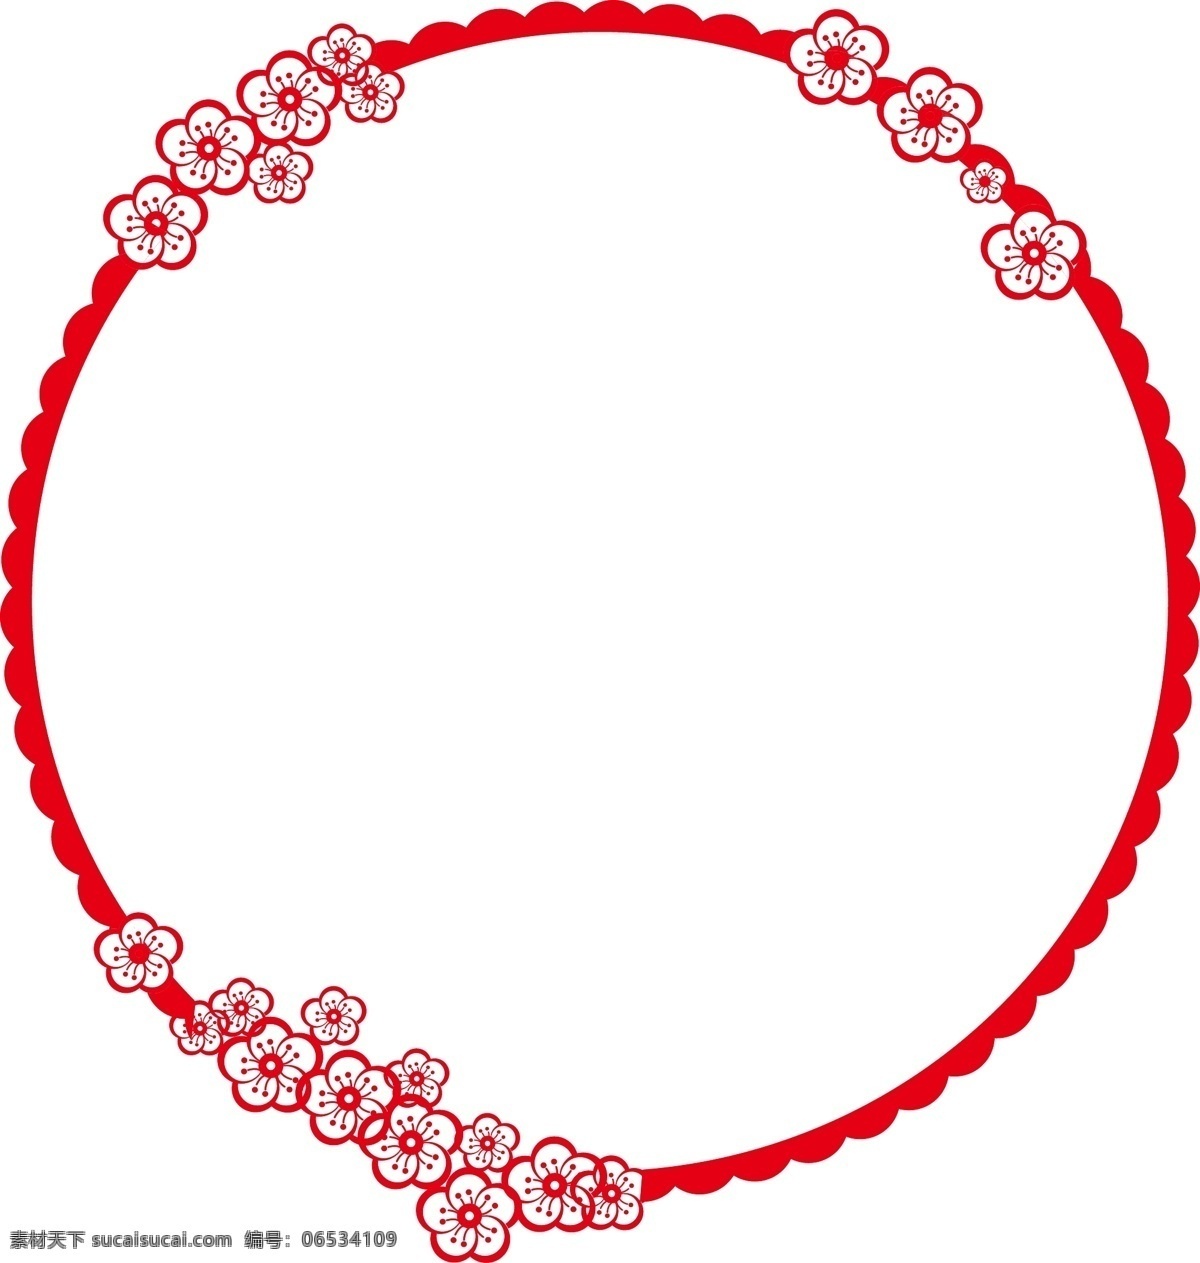 手绘 中国 风 剪纸 边框 商用 矢量图 红色 圆边框 复古 花朵